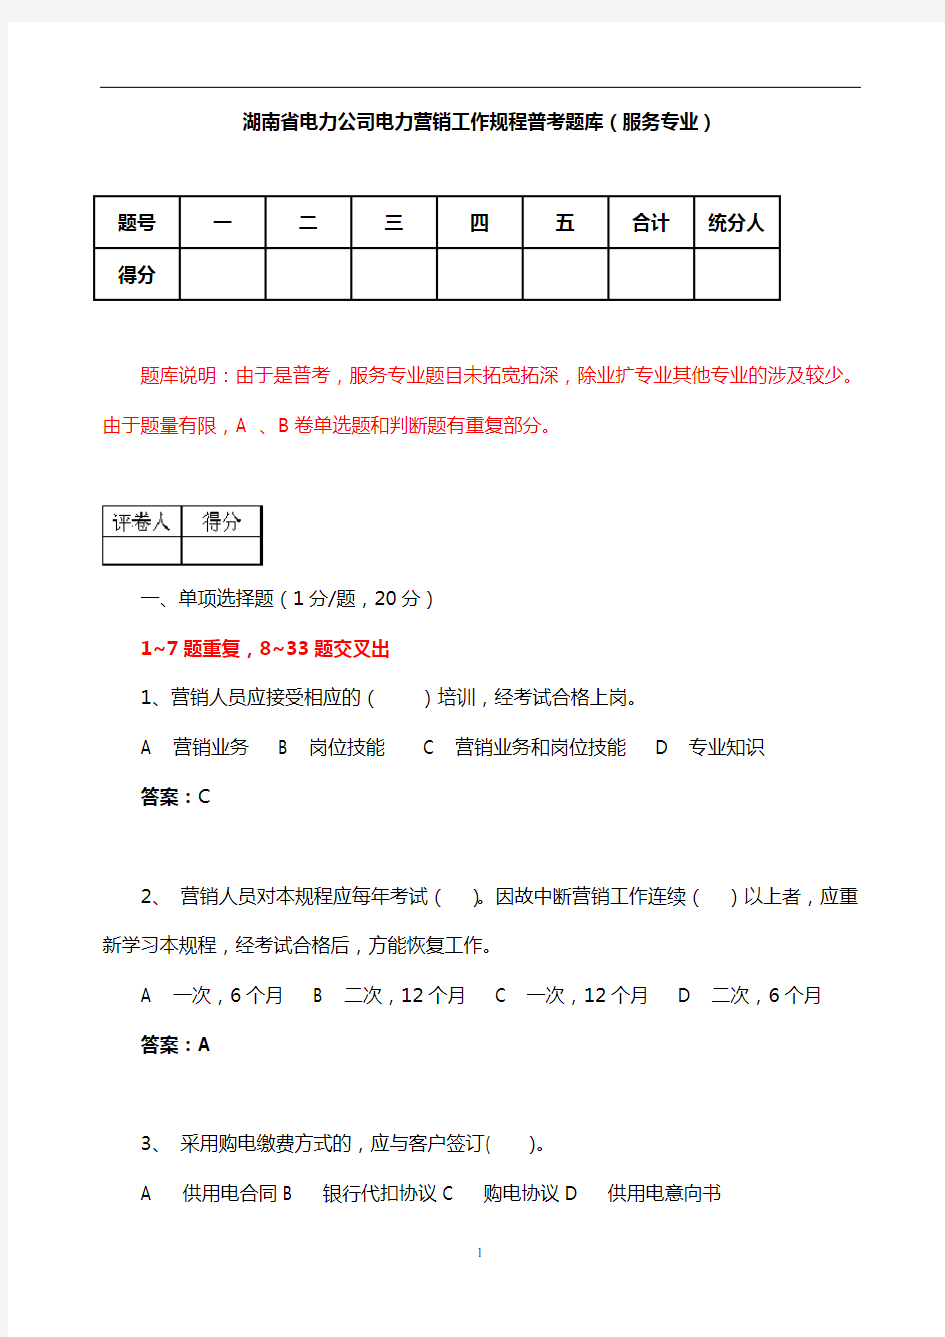 湖南省电力公司电力营销工作规程普考题库(服务专业)解析